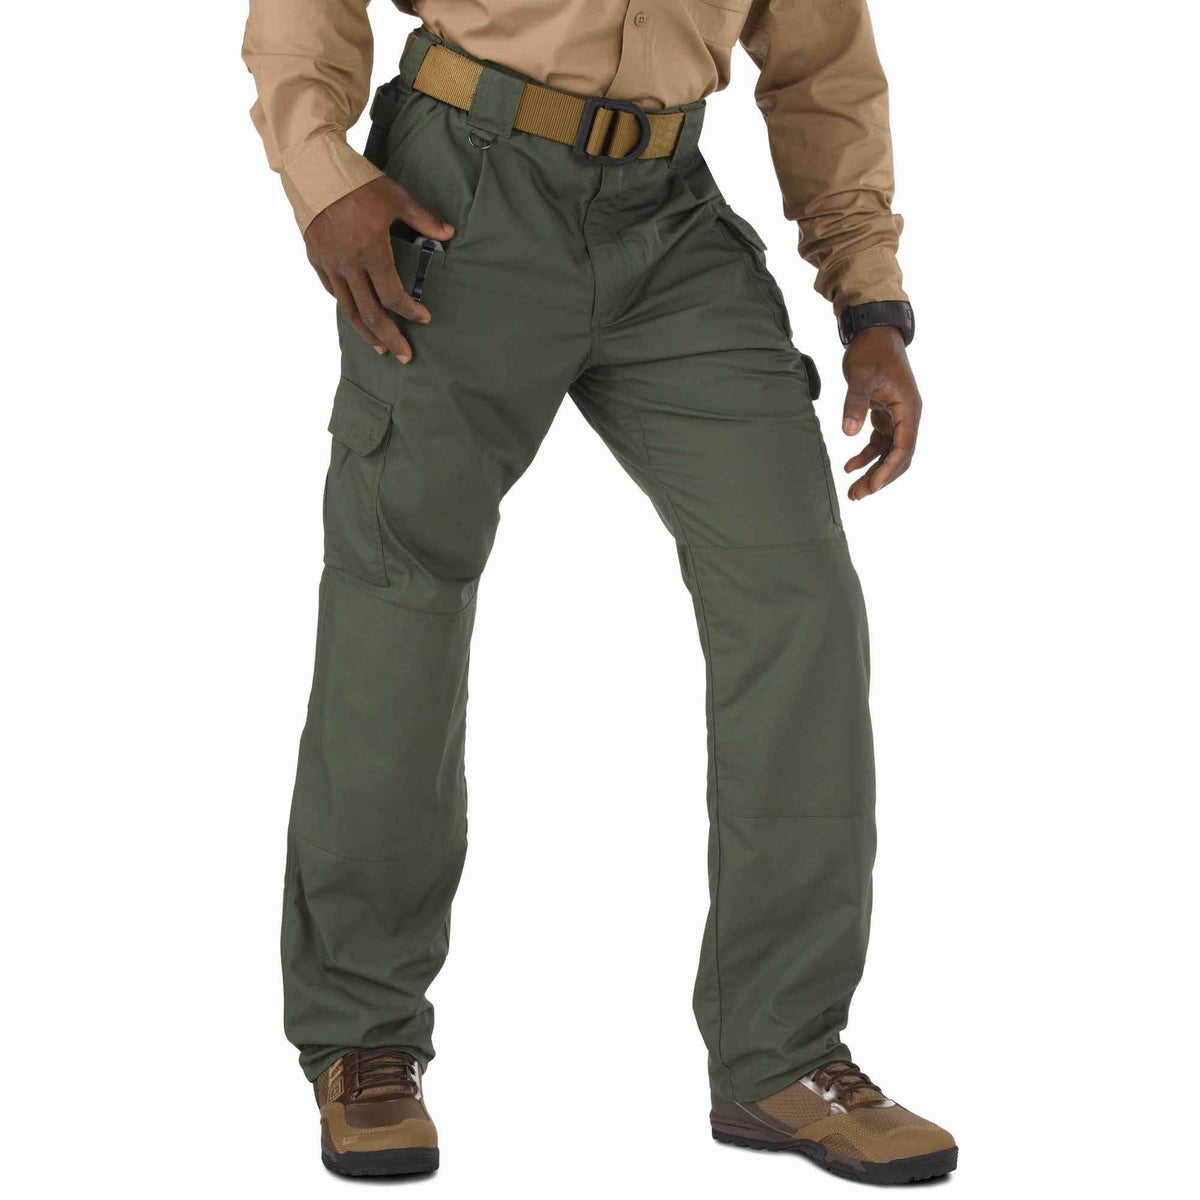 5.11 Tactical Taclite Pro Pants - TDU Green Pants 5.11 Tactical 28 30 Tactical Gear Supplier Tactical Distributors Australia